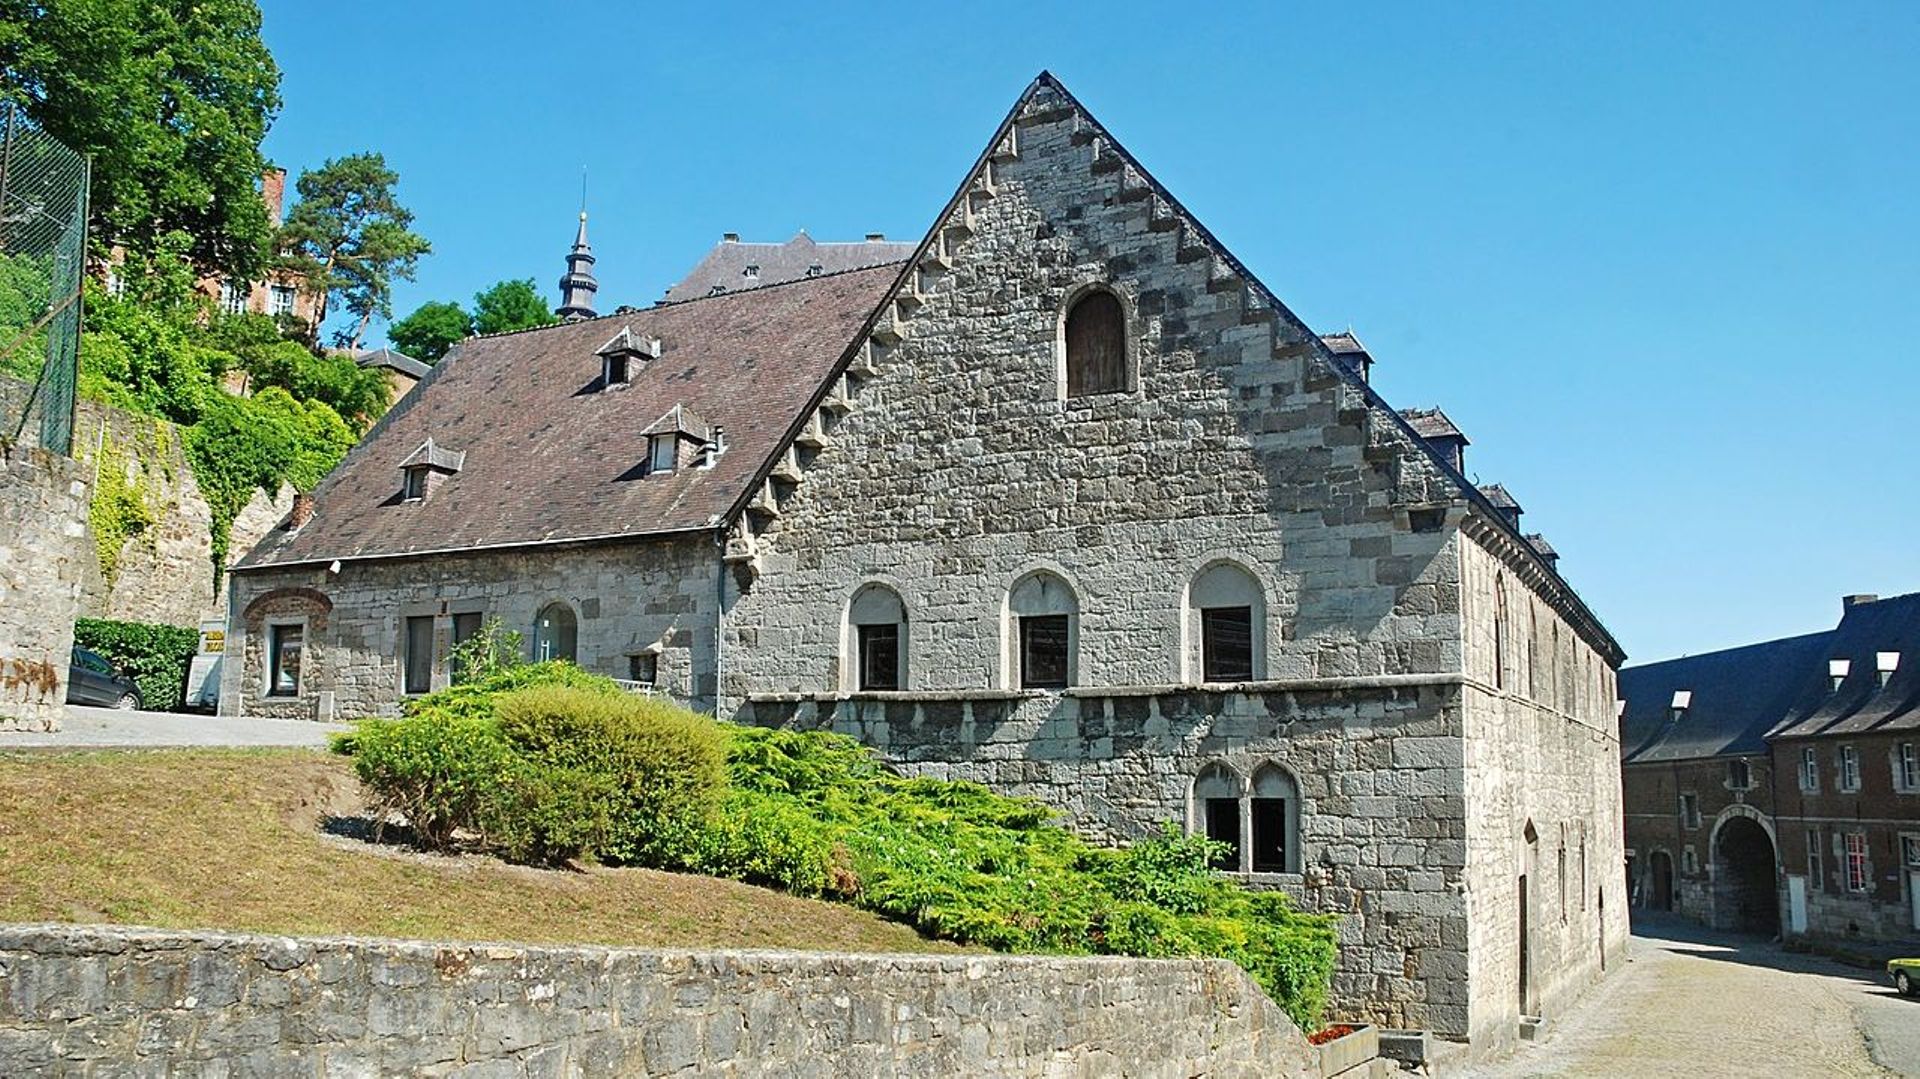 Le moulin-brasserie du 18e S où l'on peut s'installer pour une dégustation de bière et de fromage de l'abbaye.